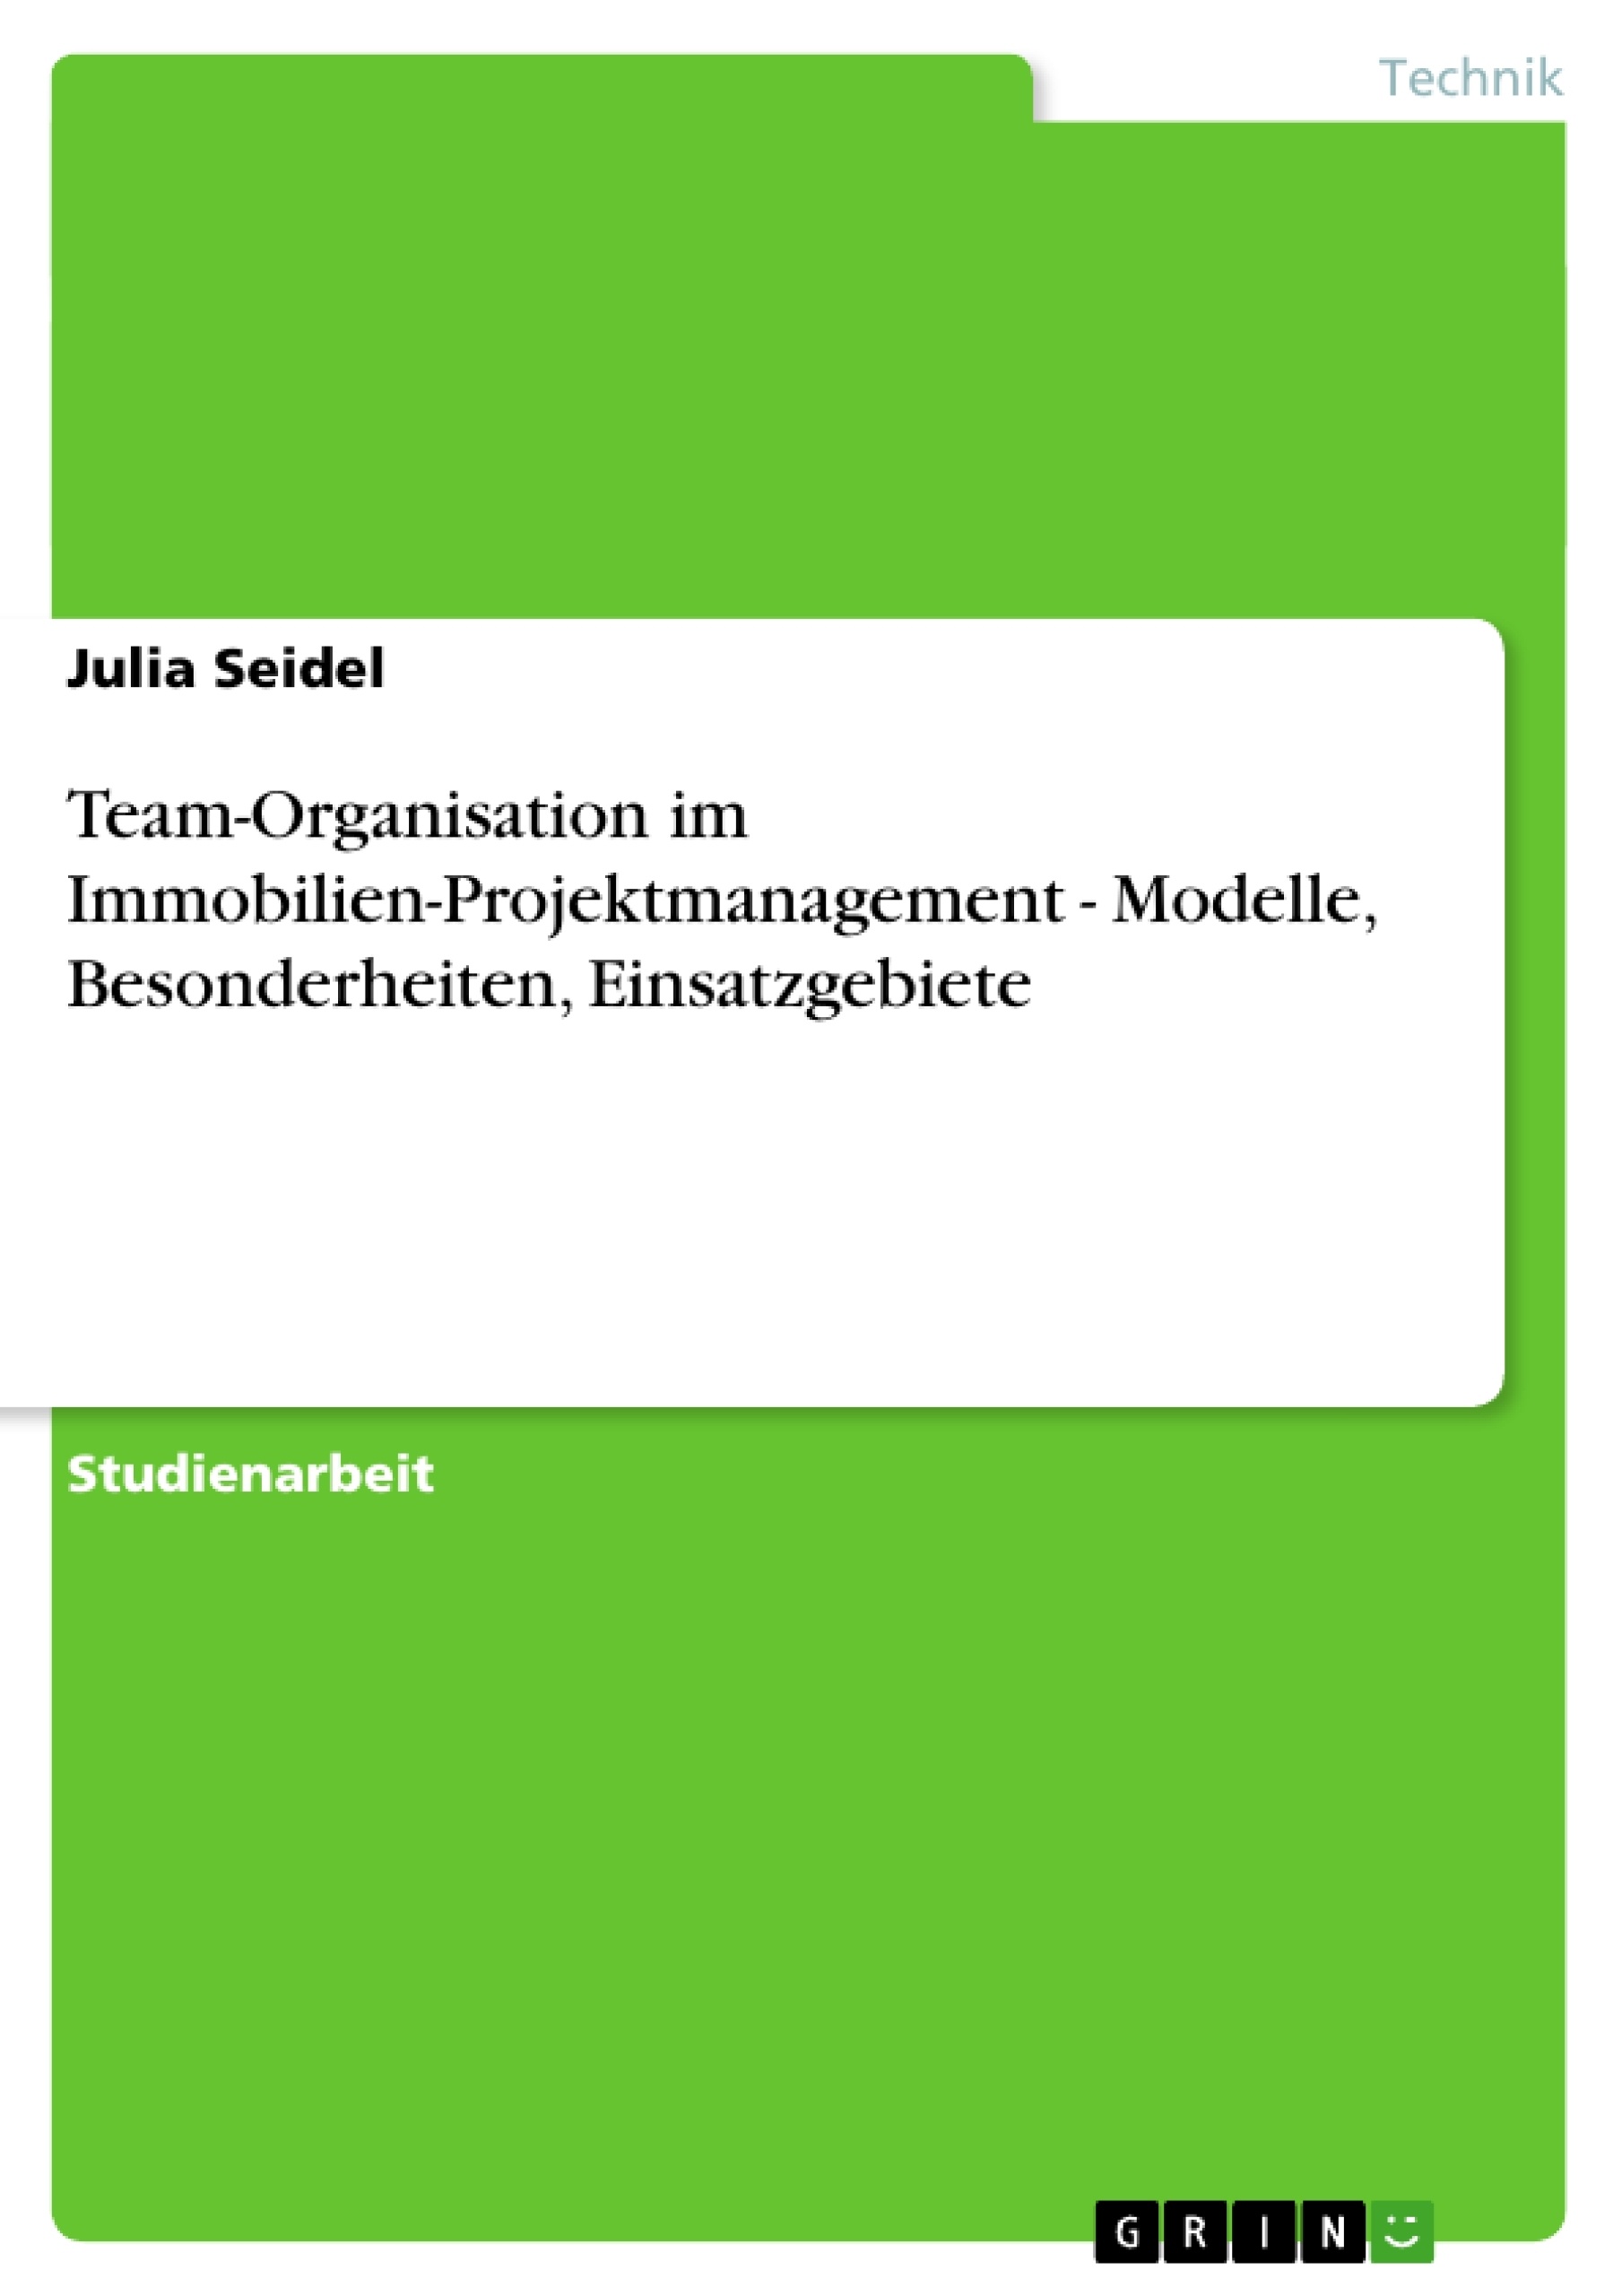 Title: Team-Organisation im Immobilien-Projektmanagement - Modelle, Besonderheiten, Einsatzgebiete